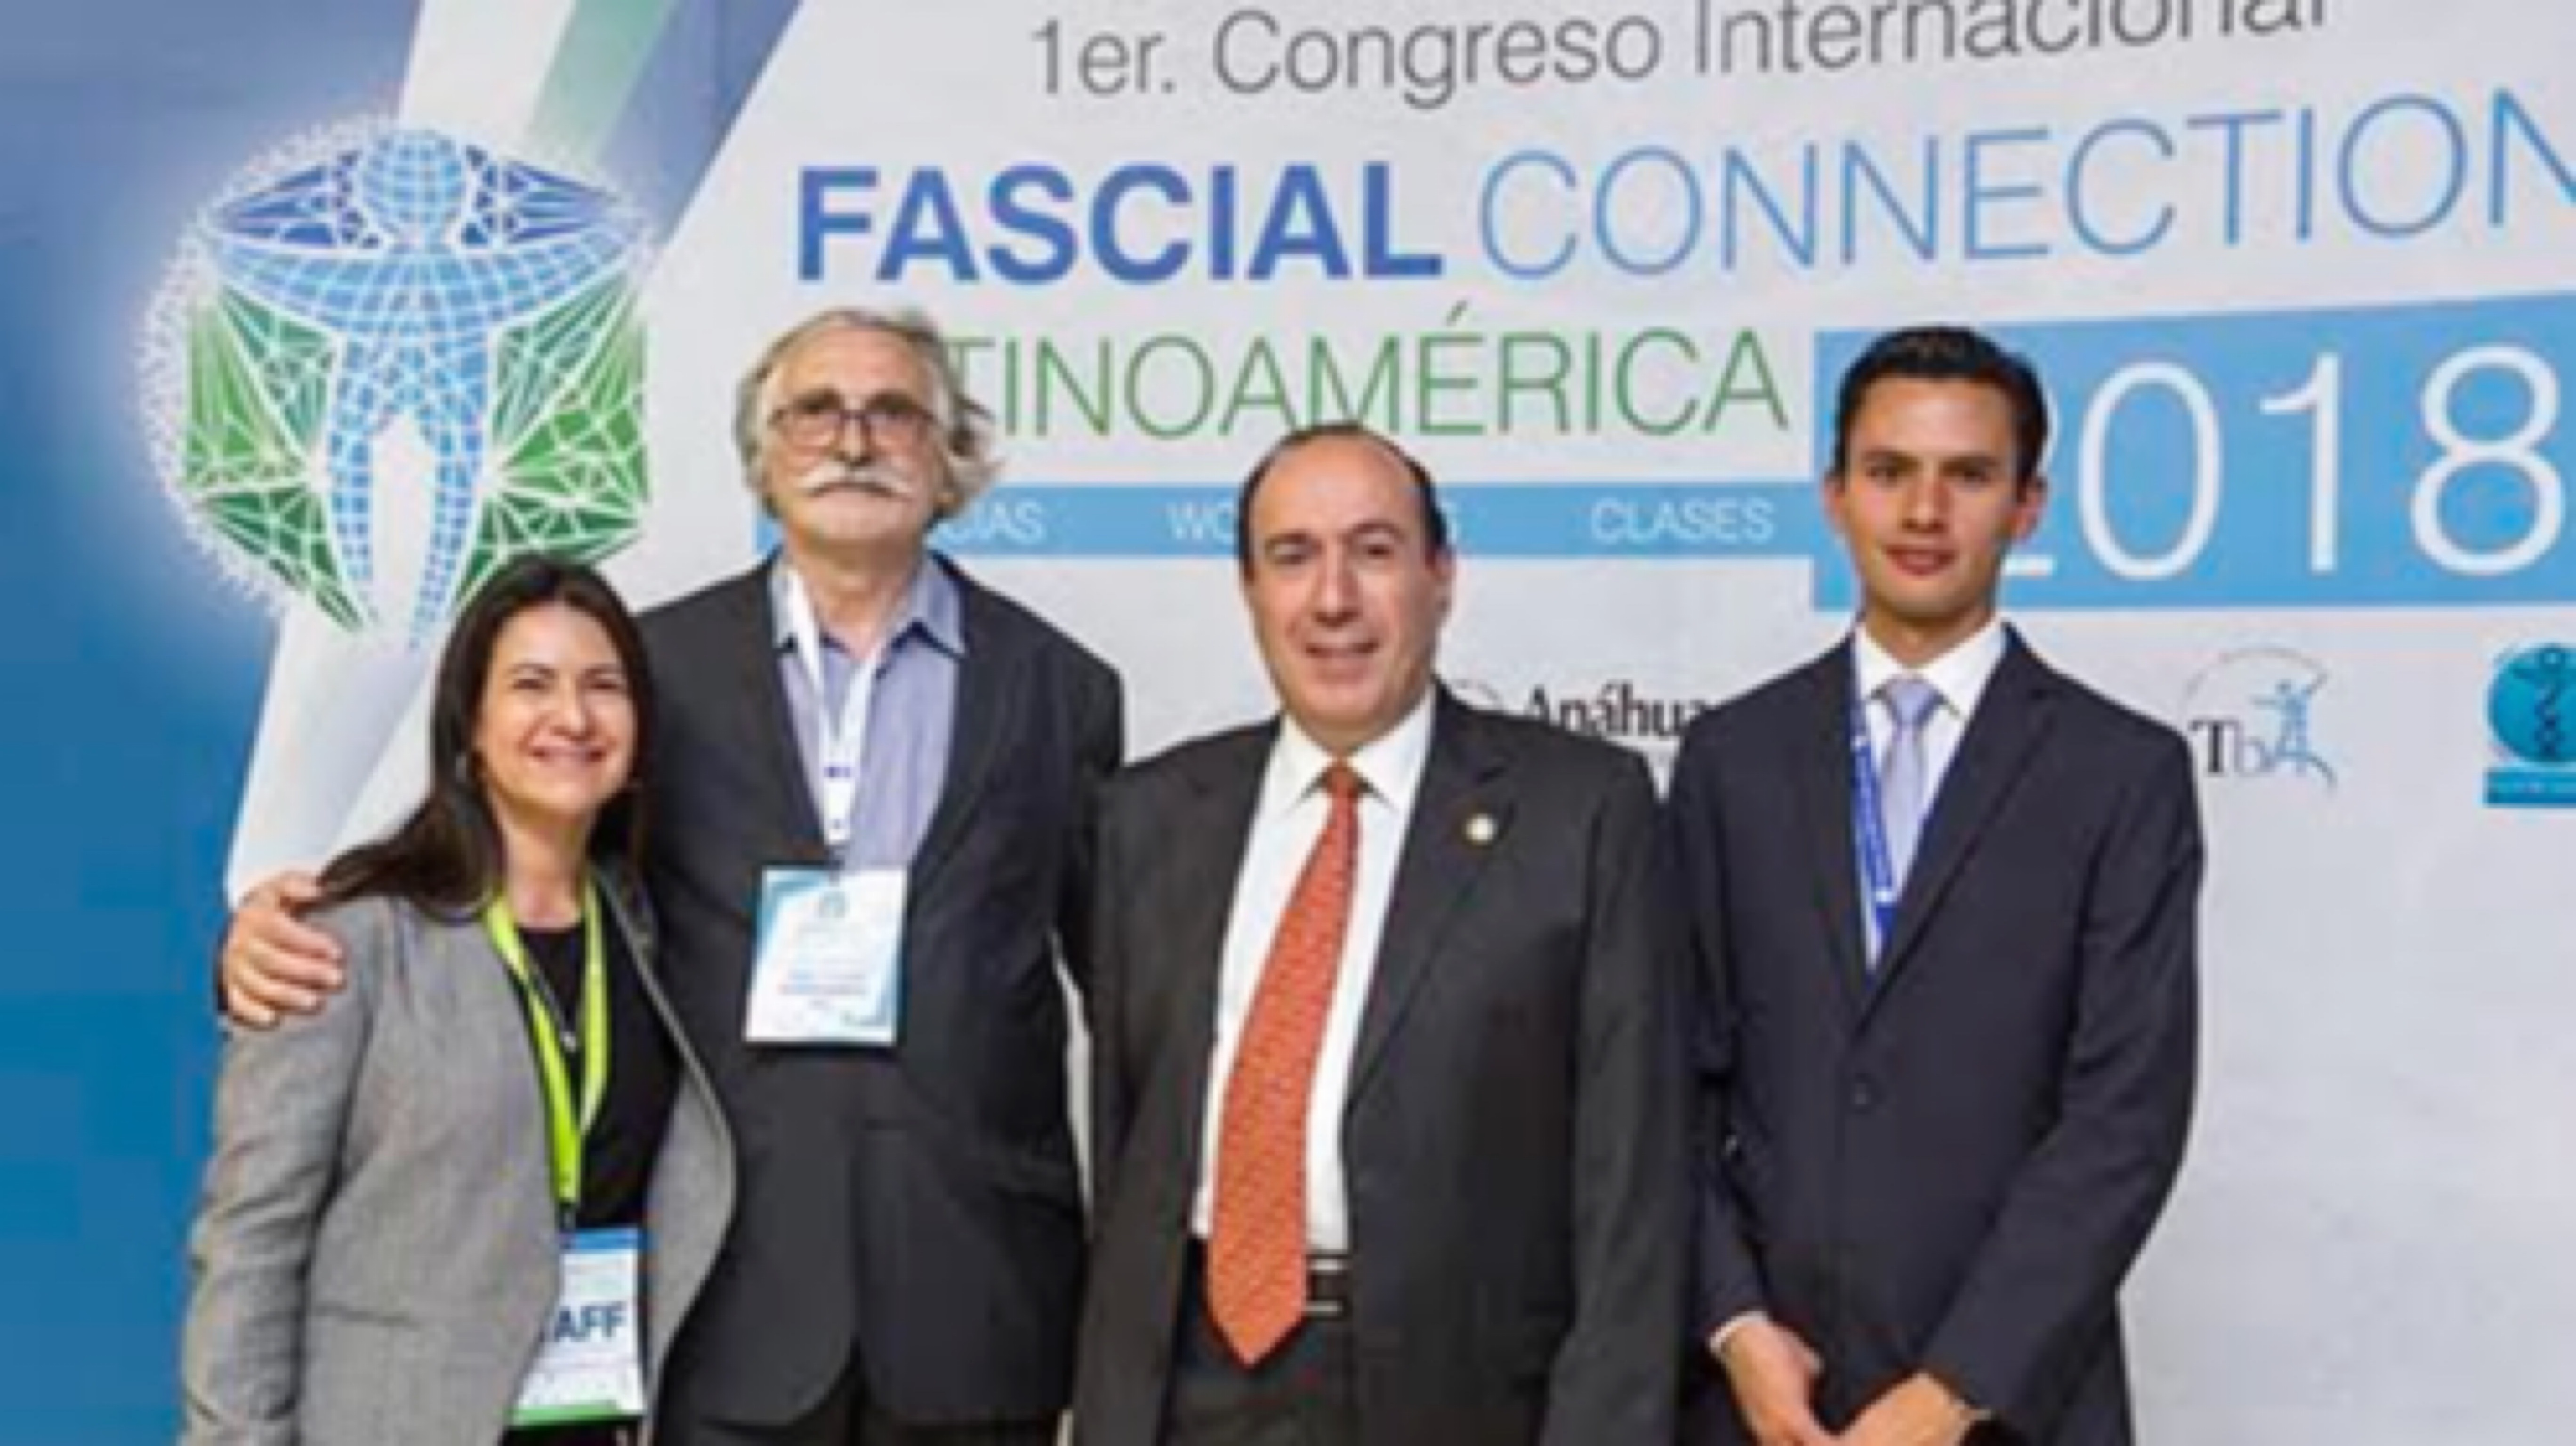 Recibimos a expertos internacionales en el Congreso Latinoamericano Fascial Connection